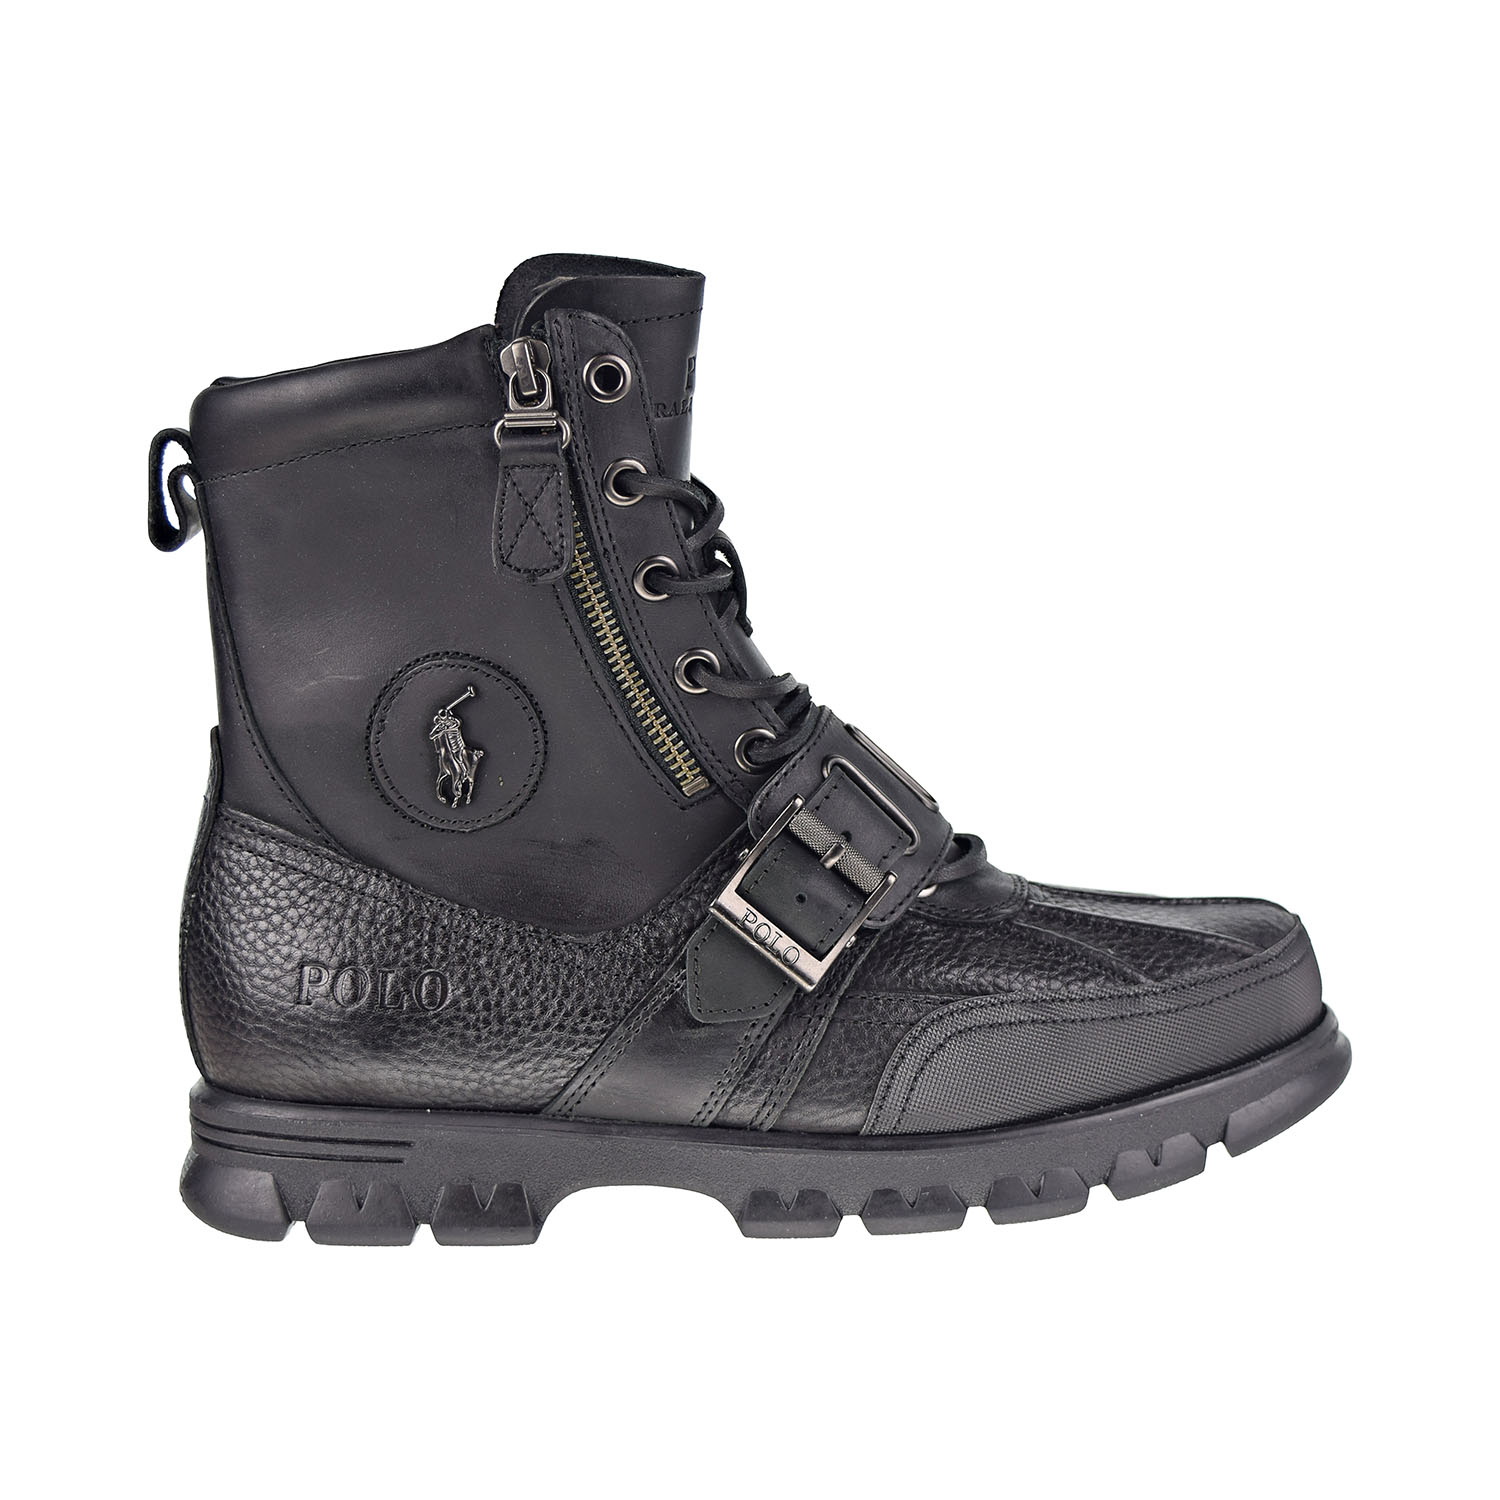 Ralph Lauren Polo Ralph Lauren Andres III Men's Boots Black 812527239-001 (9.5 M US)